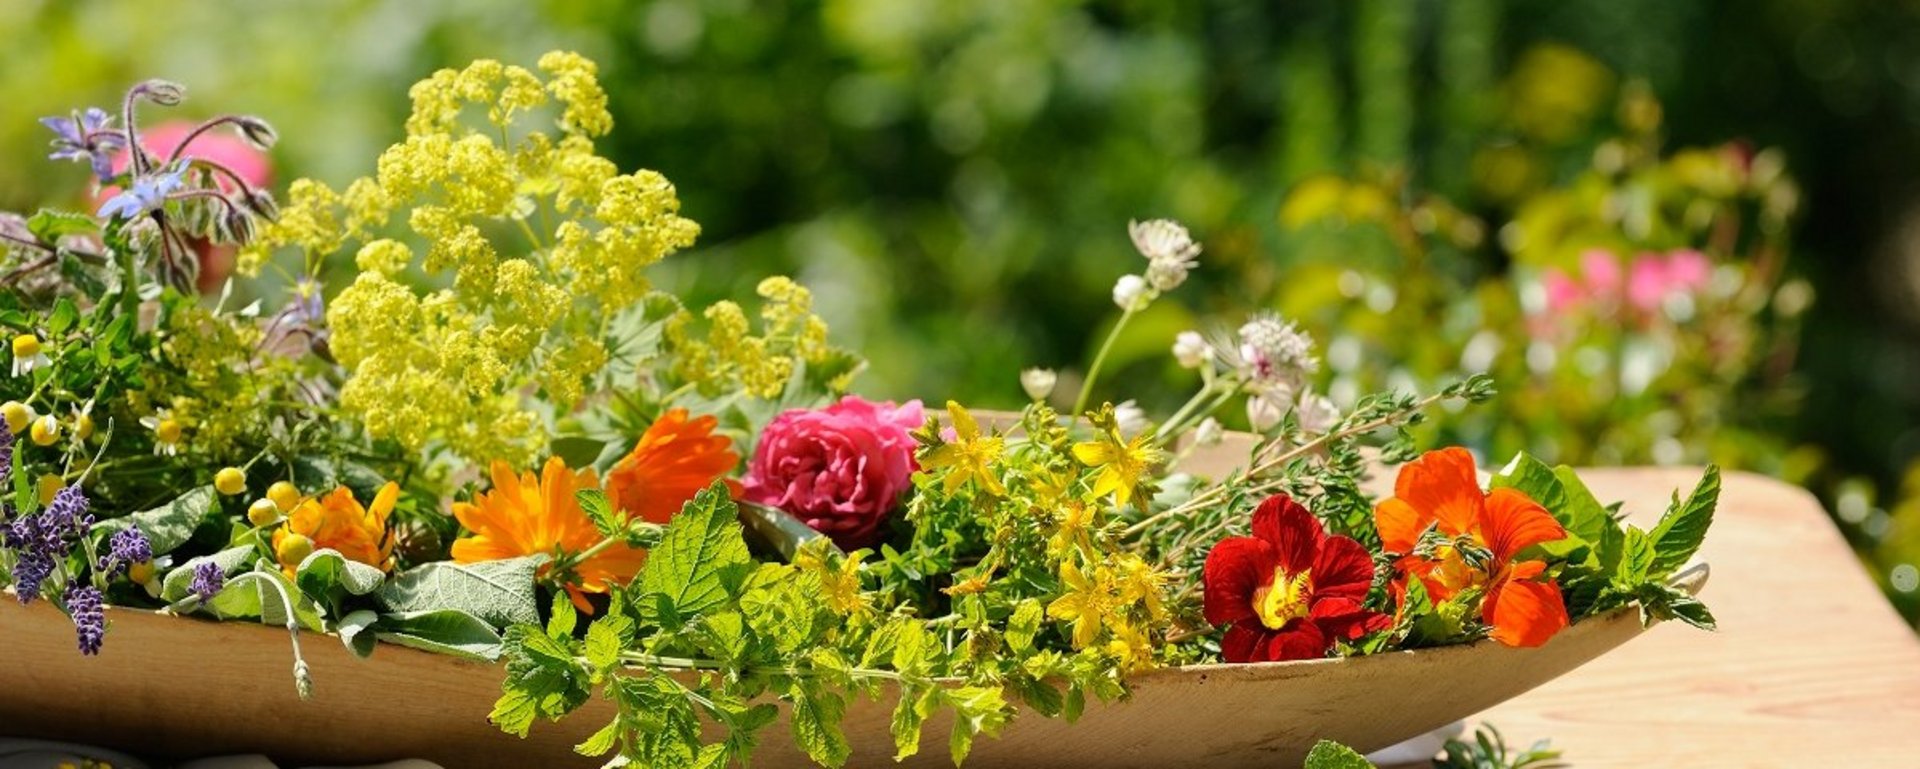 Kräuter und Blumen duftend frisch vom Bauernhof aus der Region Chiemsee